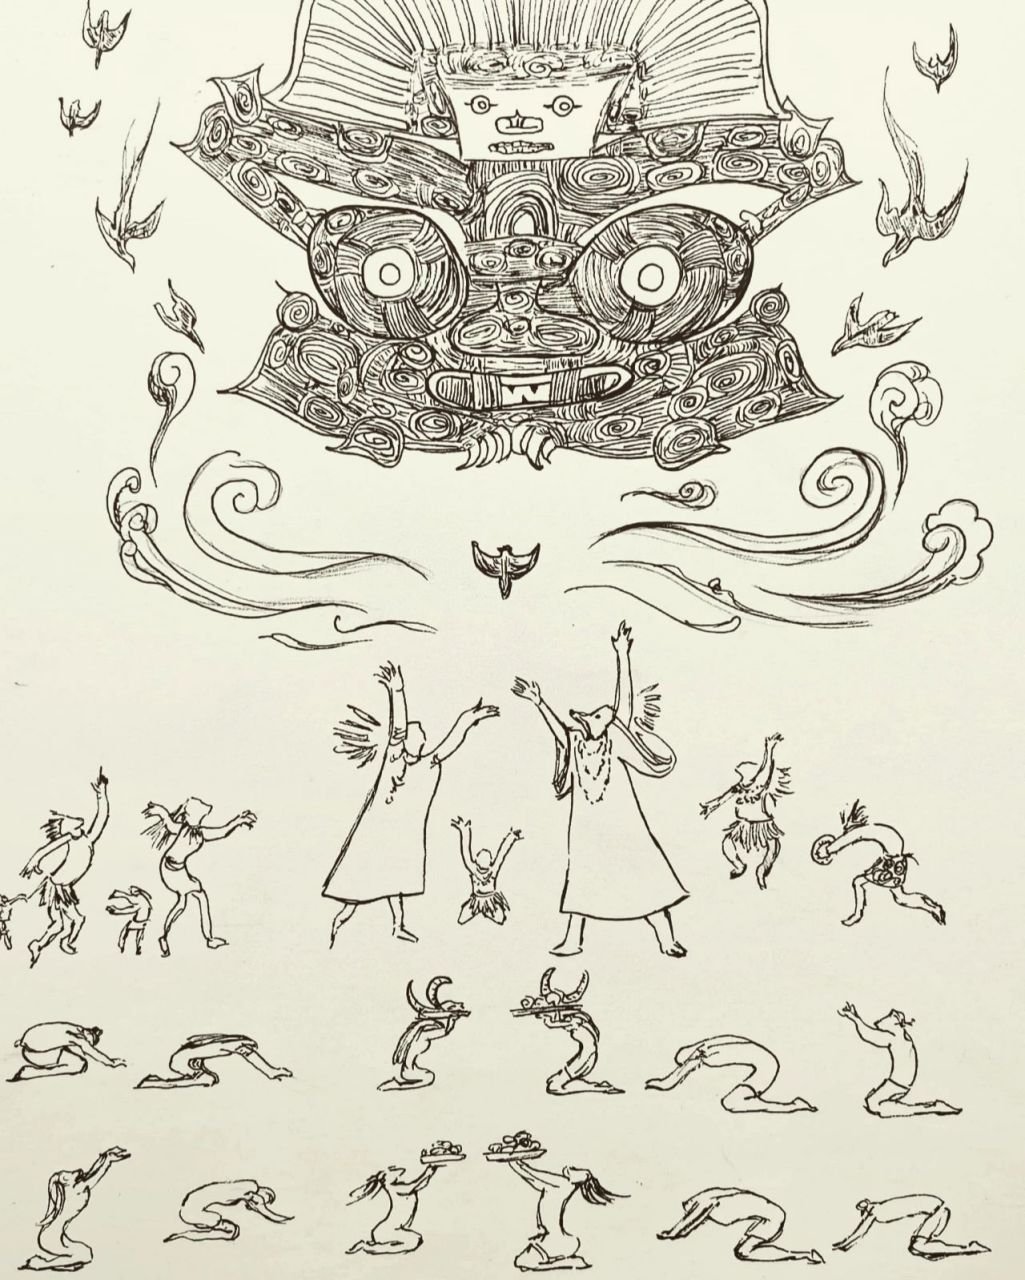 玉琮—神人兽面纹 今天画了良渚玉琮的神人兽面纹